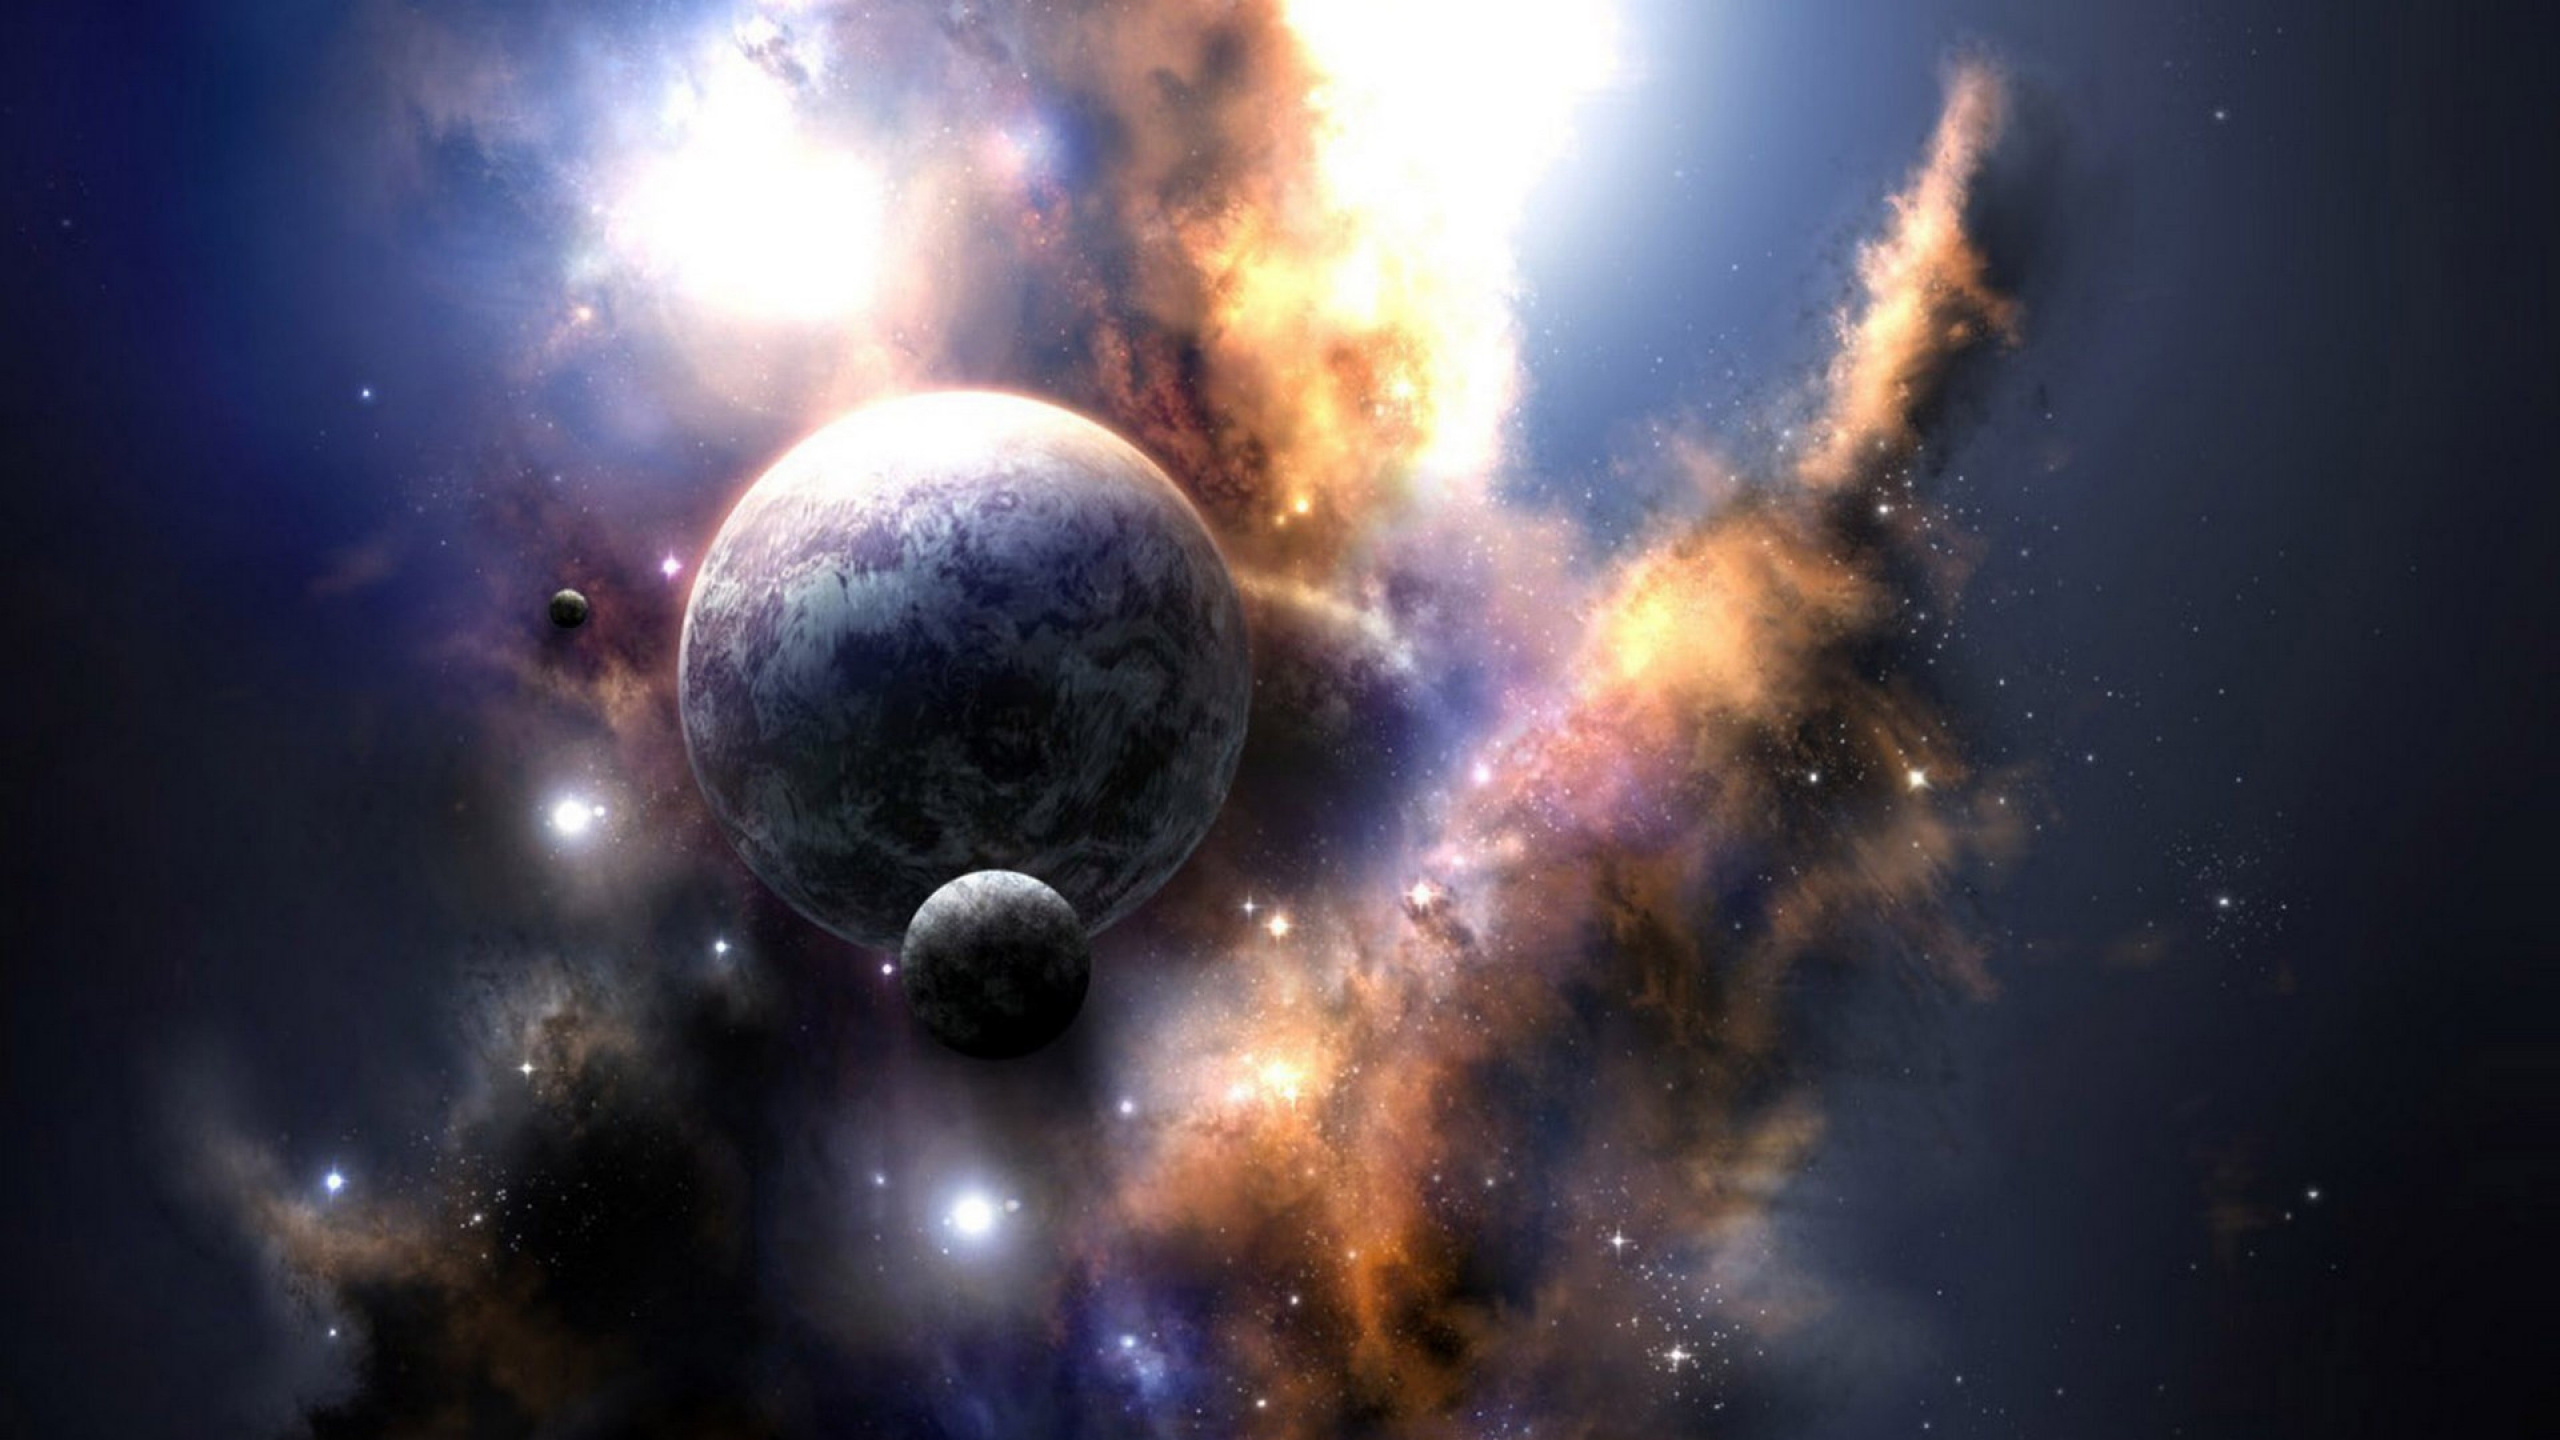 Universo, el Espacio Exterior, Objeto Astronómico, Ambiente, Espacio. Wallpaper in 2560x1440 Resolution